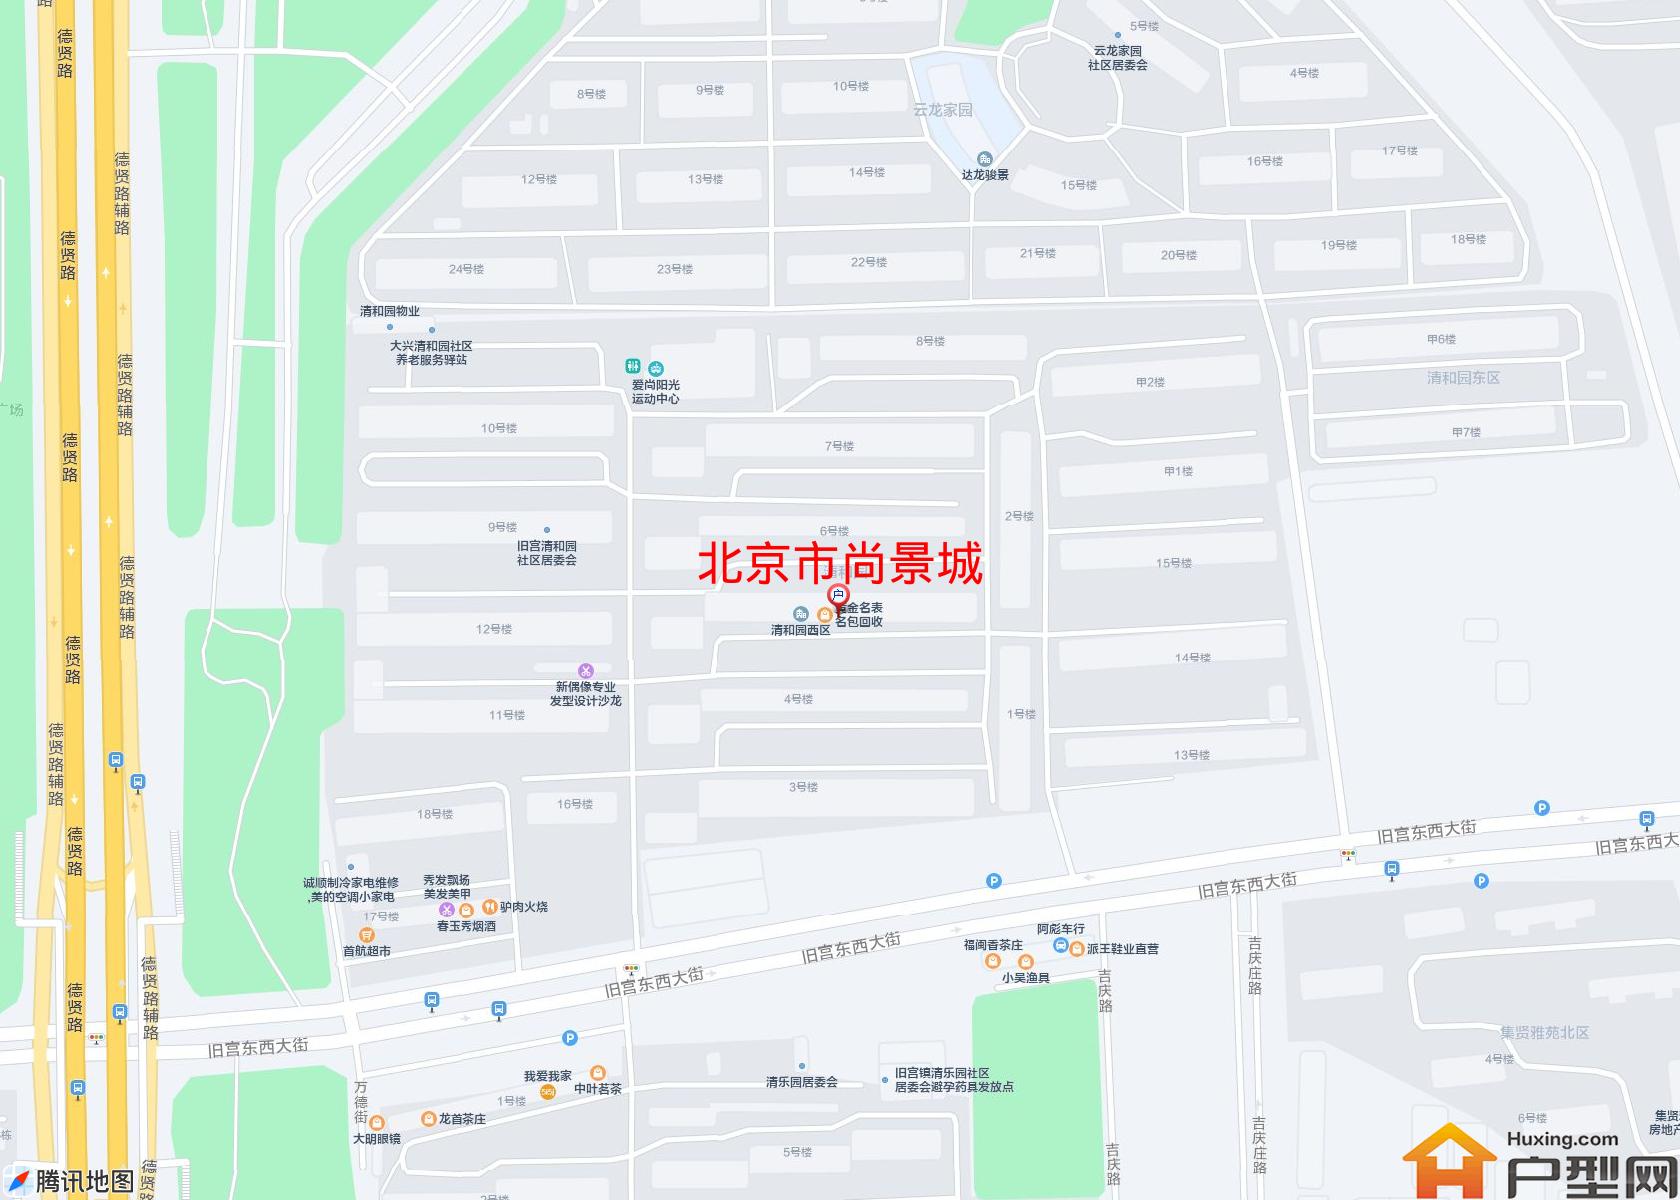 尚景城小区 - 户型网